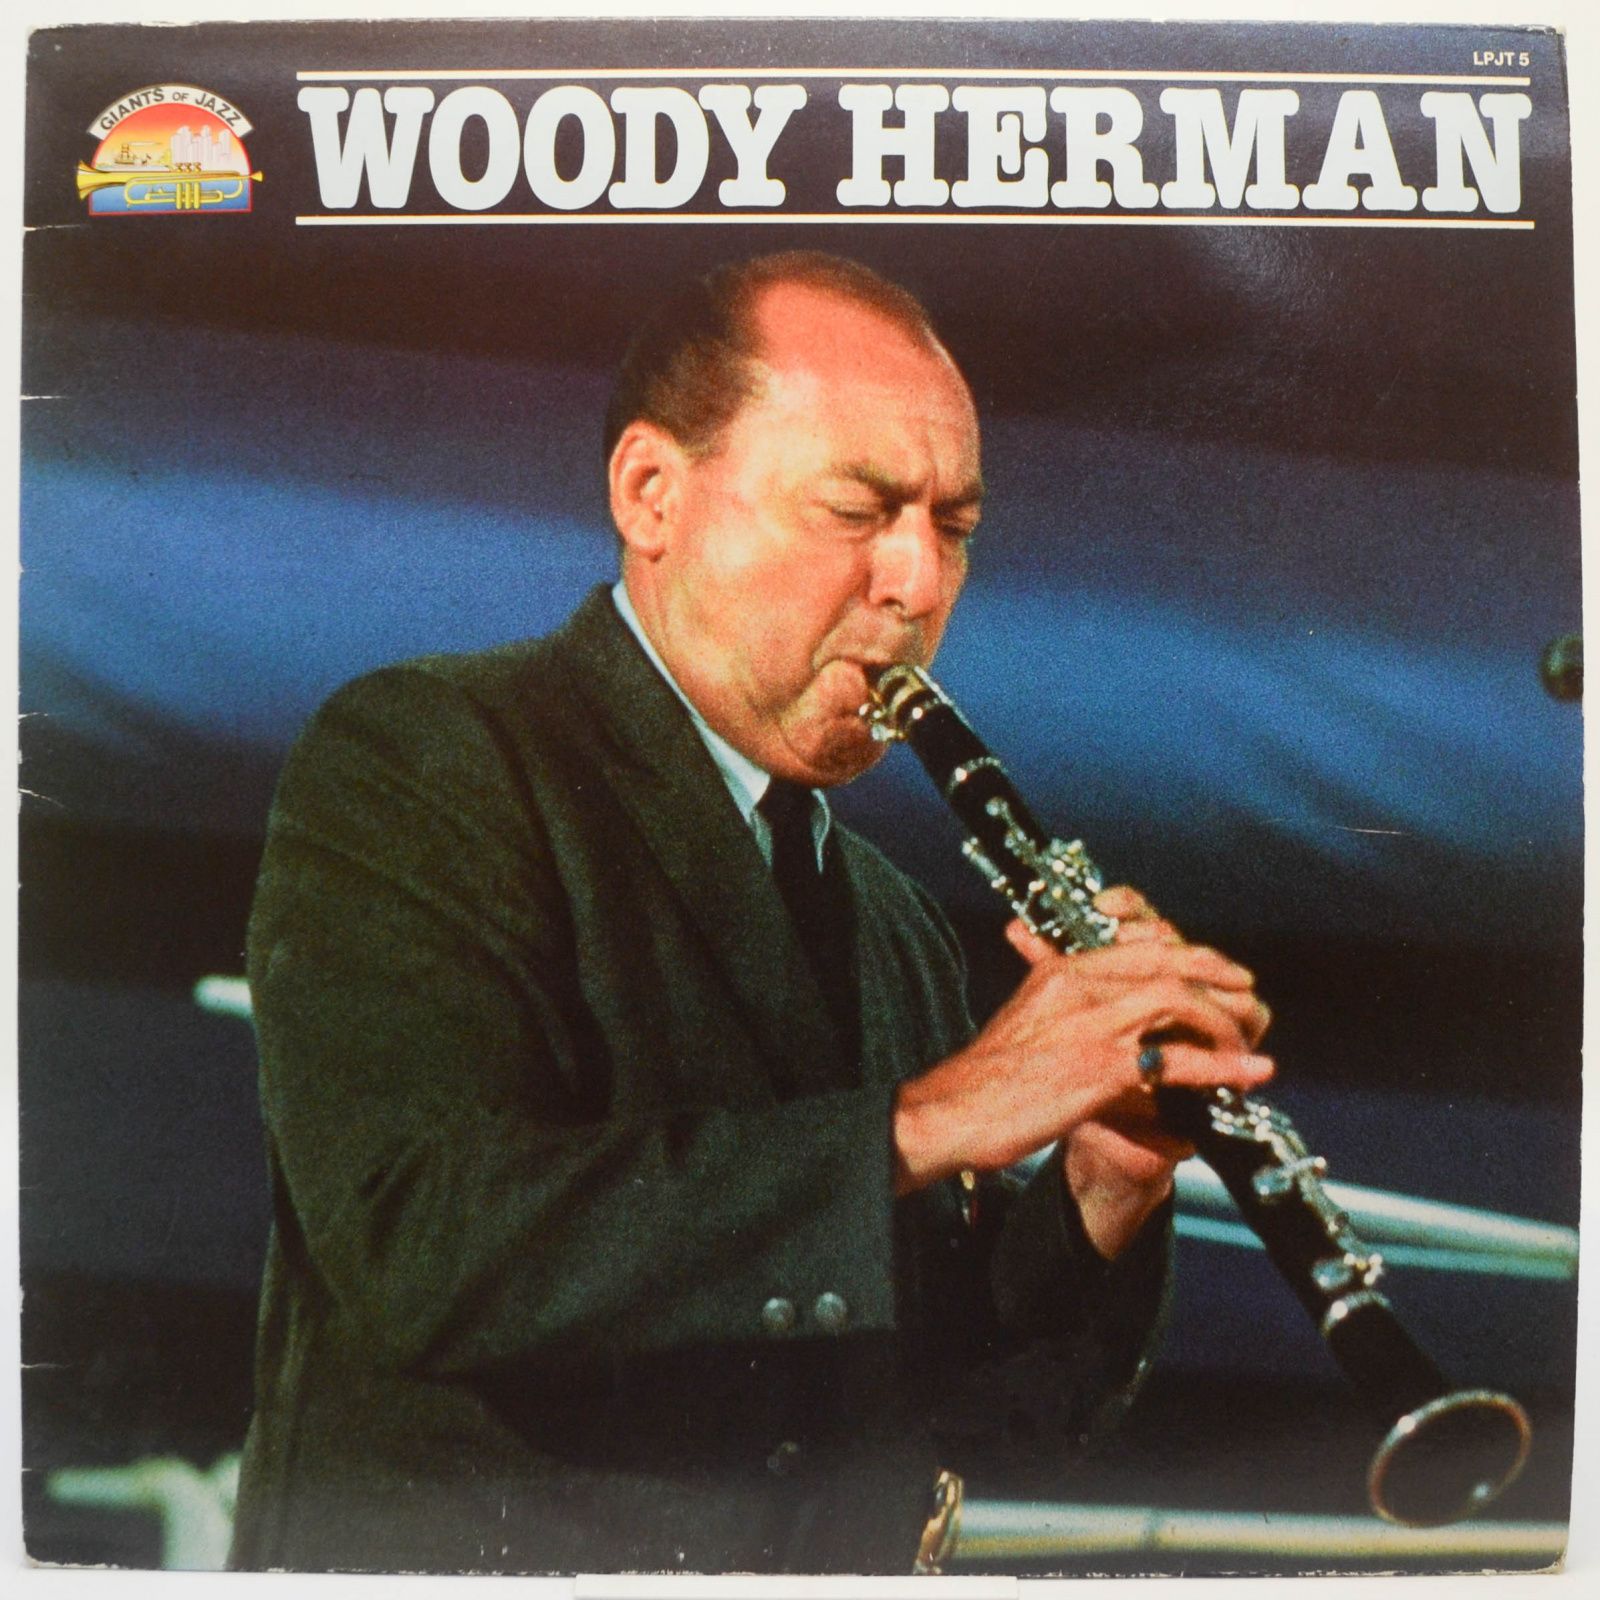 Woody Herman, 1984